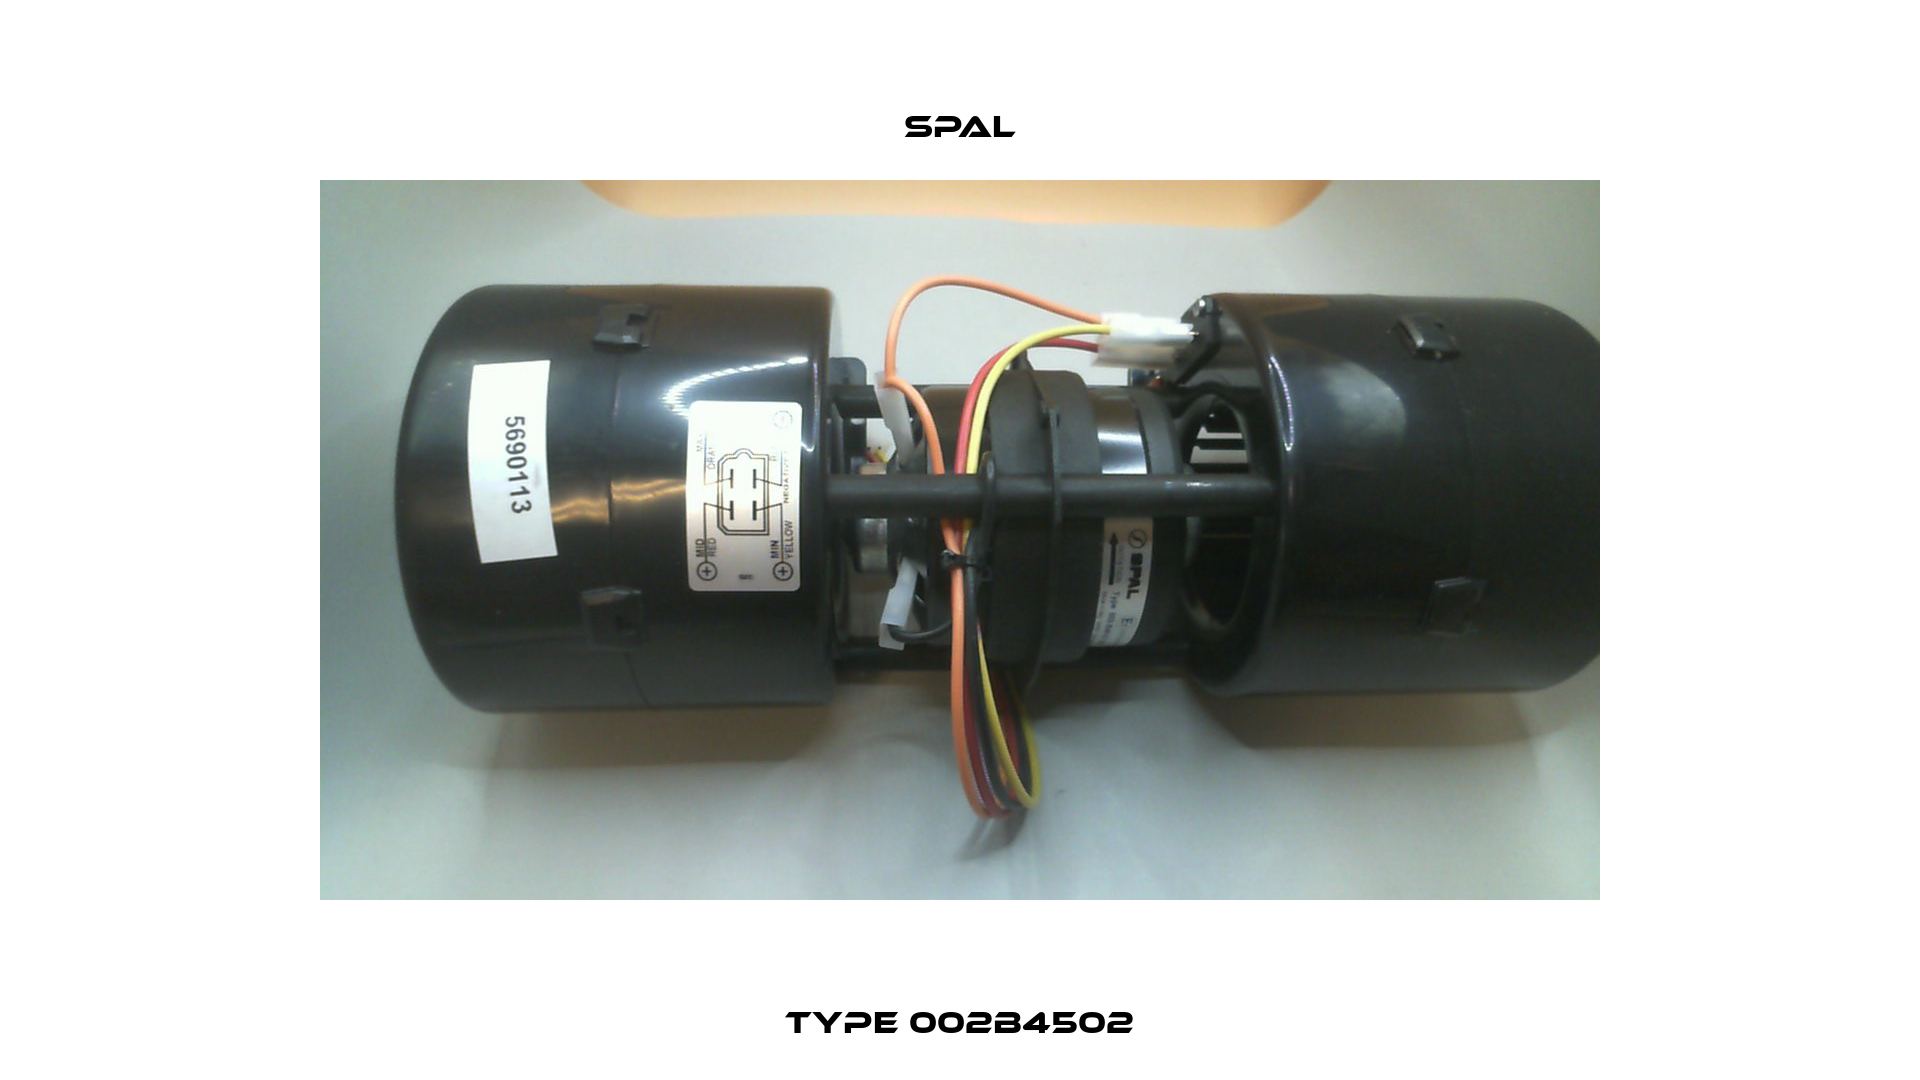 Type 002B4502 SPAL